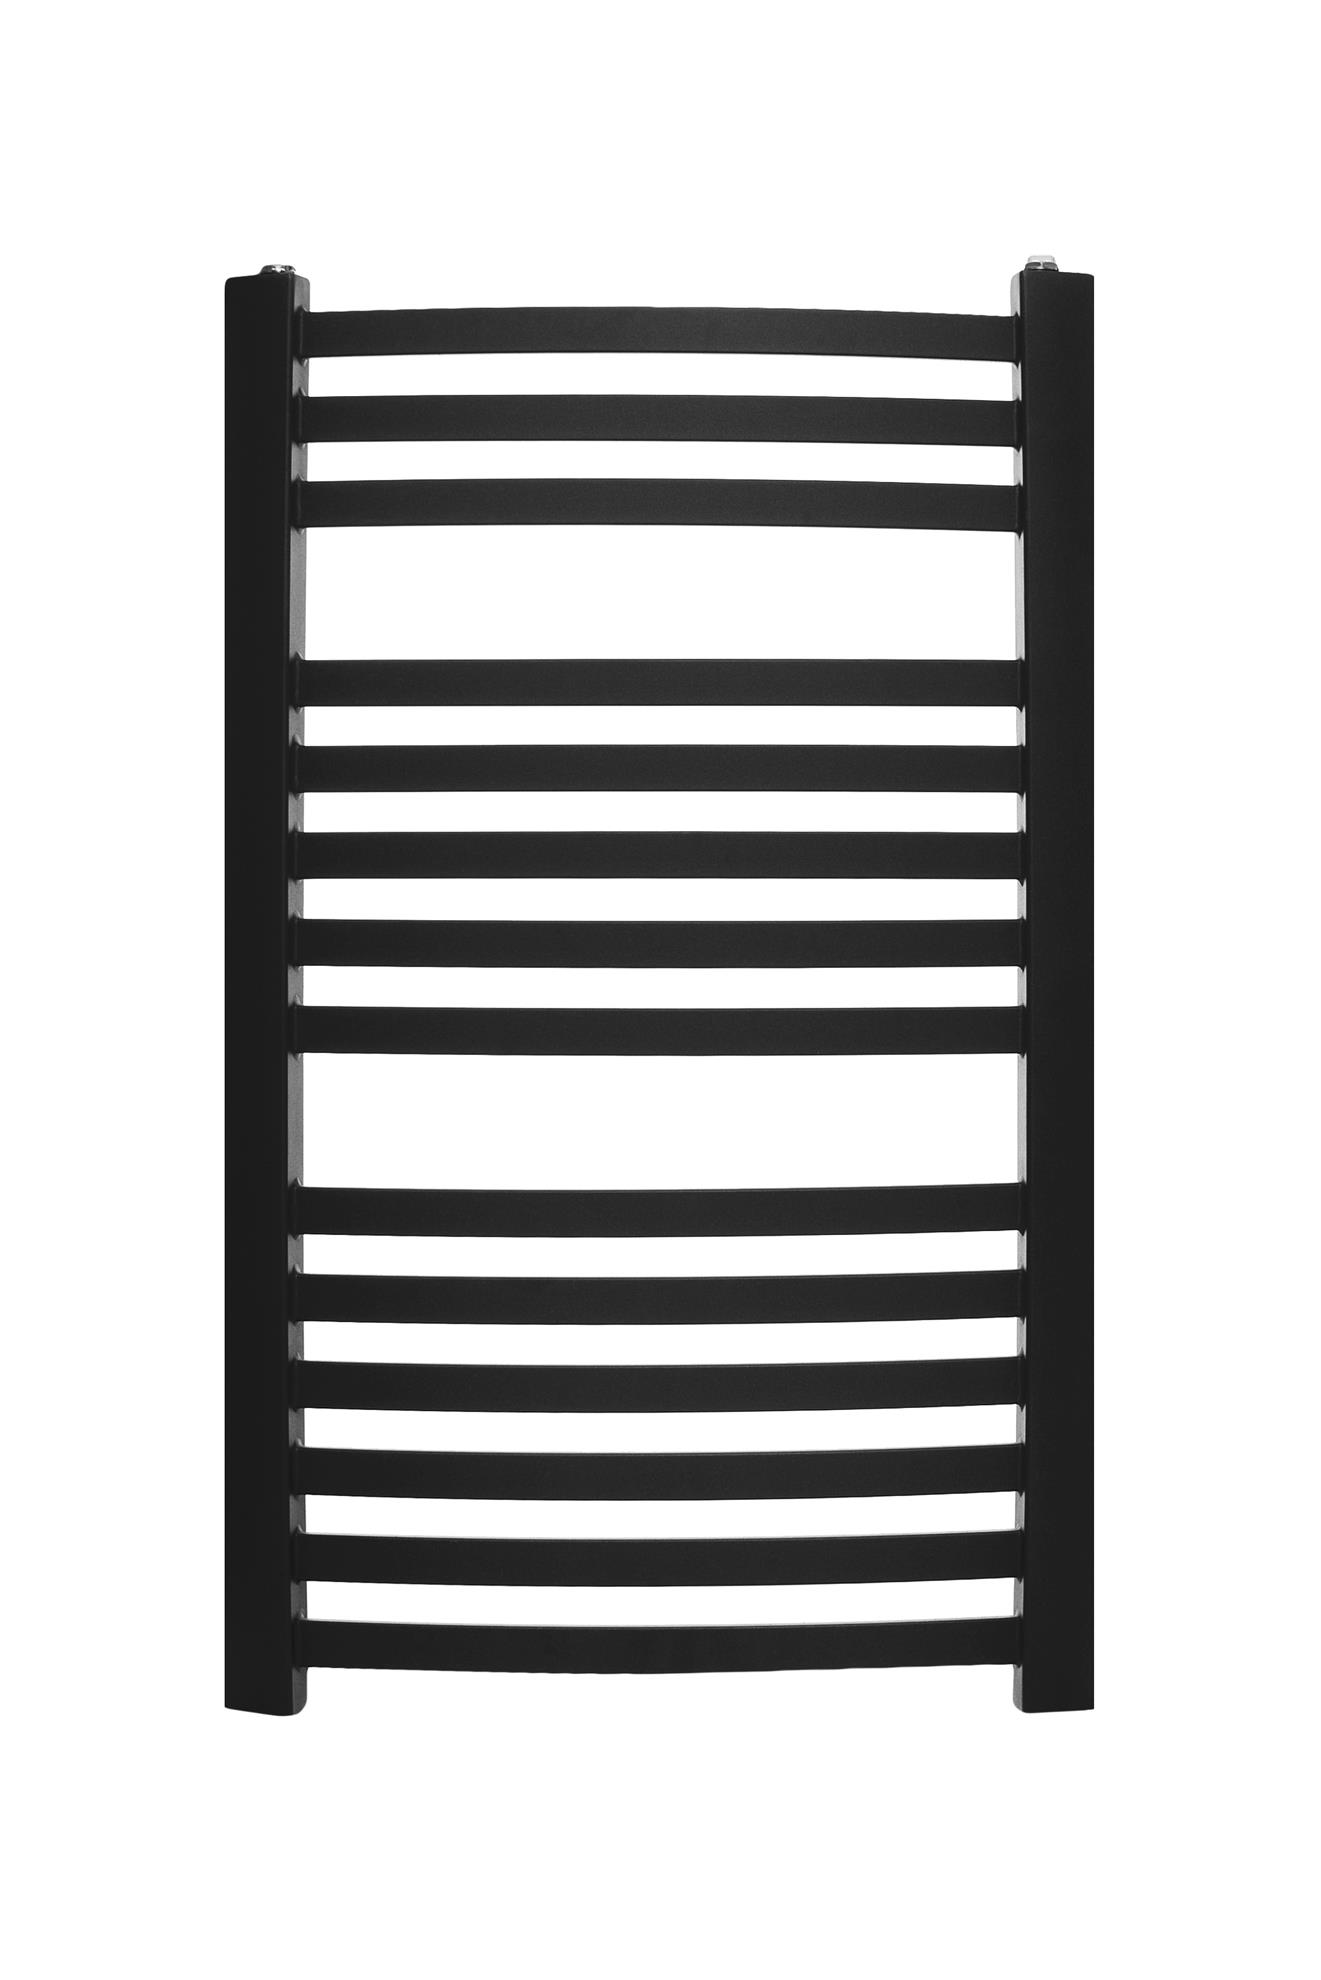 Obrazek Grzejnik łazienkowy stalowy drabinkowy PAOLA kolor CZARNY- czas realizacji 24 h